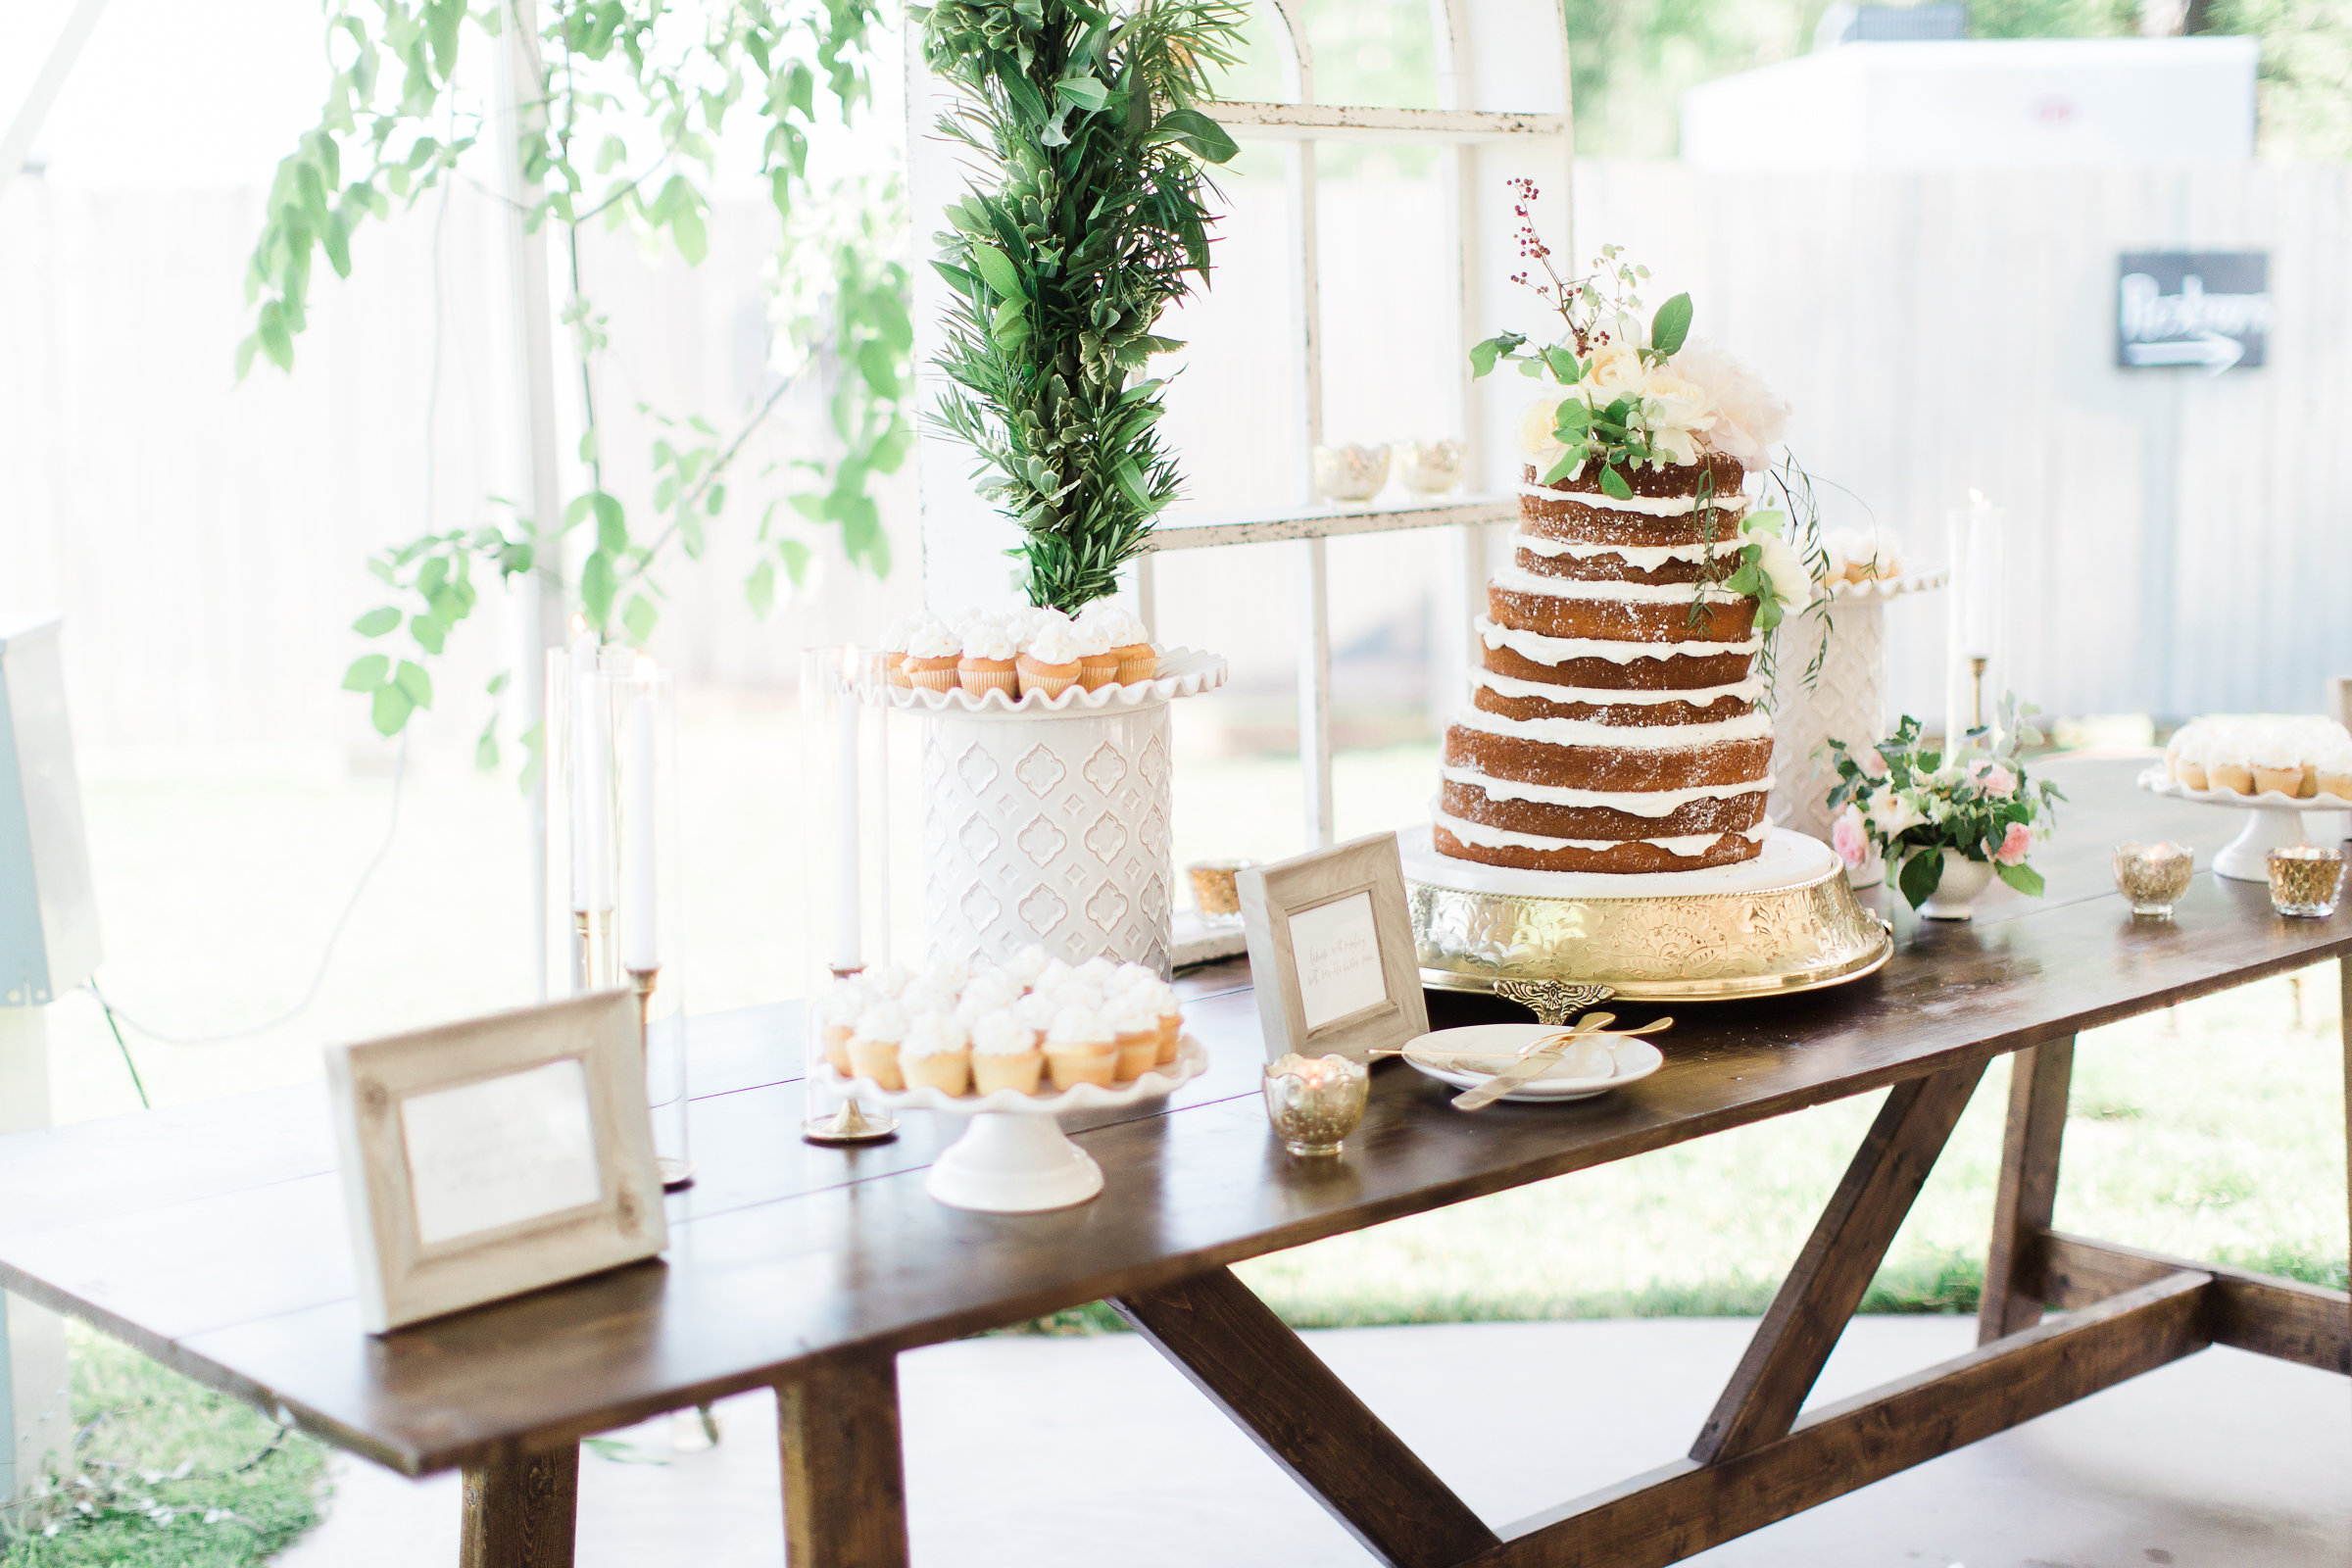 Naked Wedding Cake | The Day's Design | Ashley Slater Photography